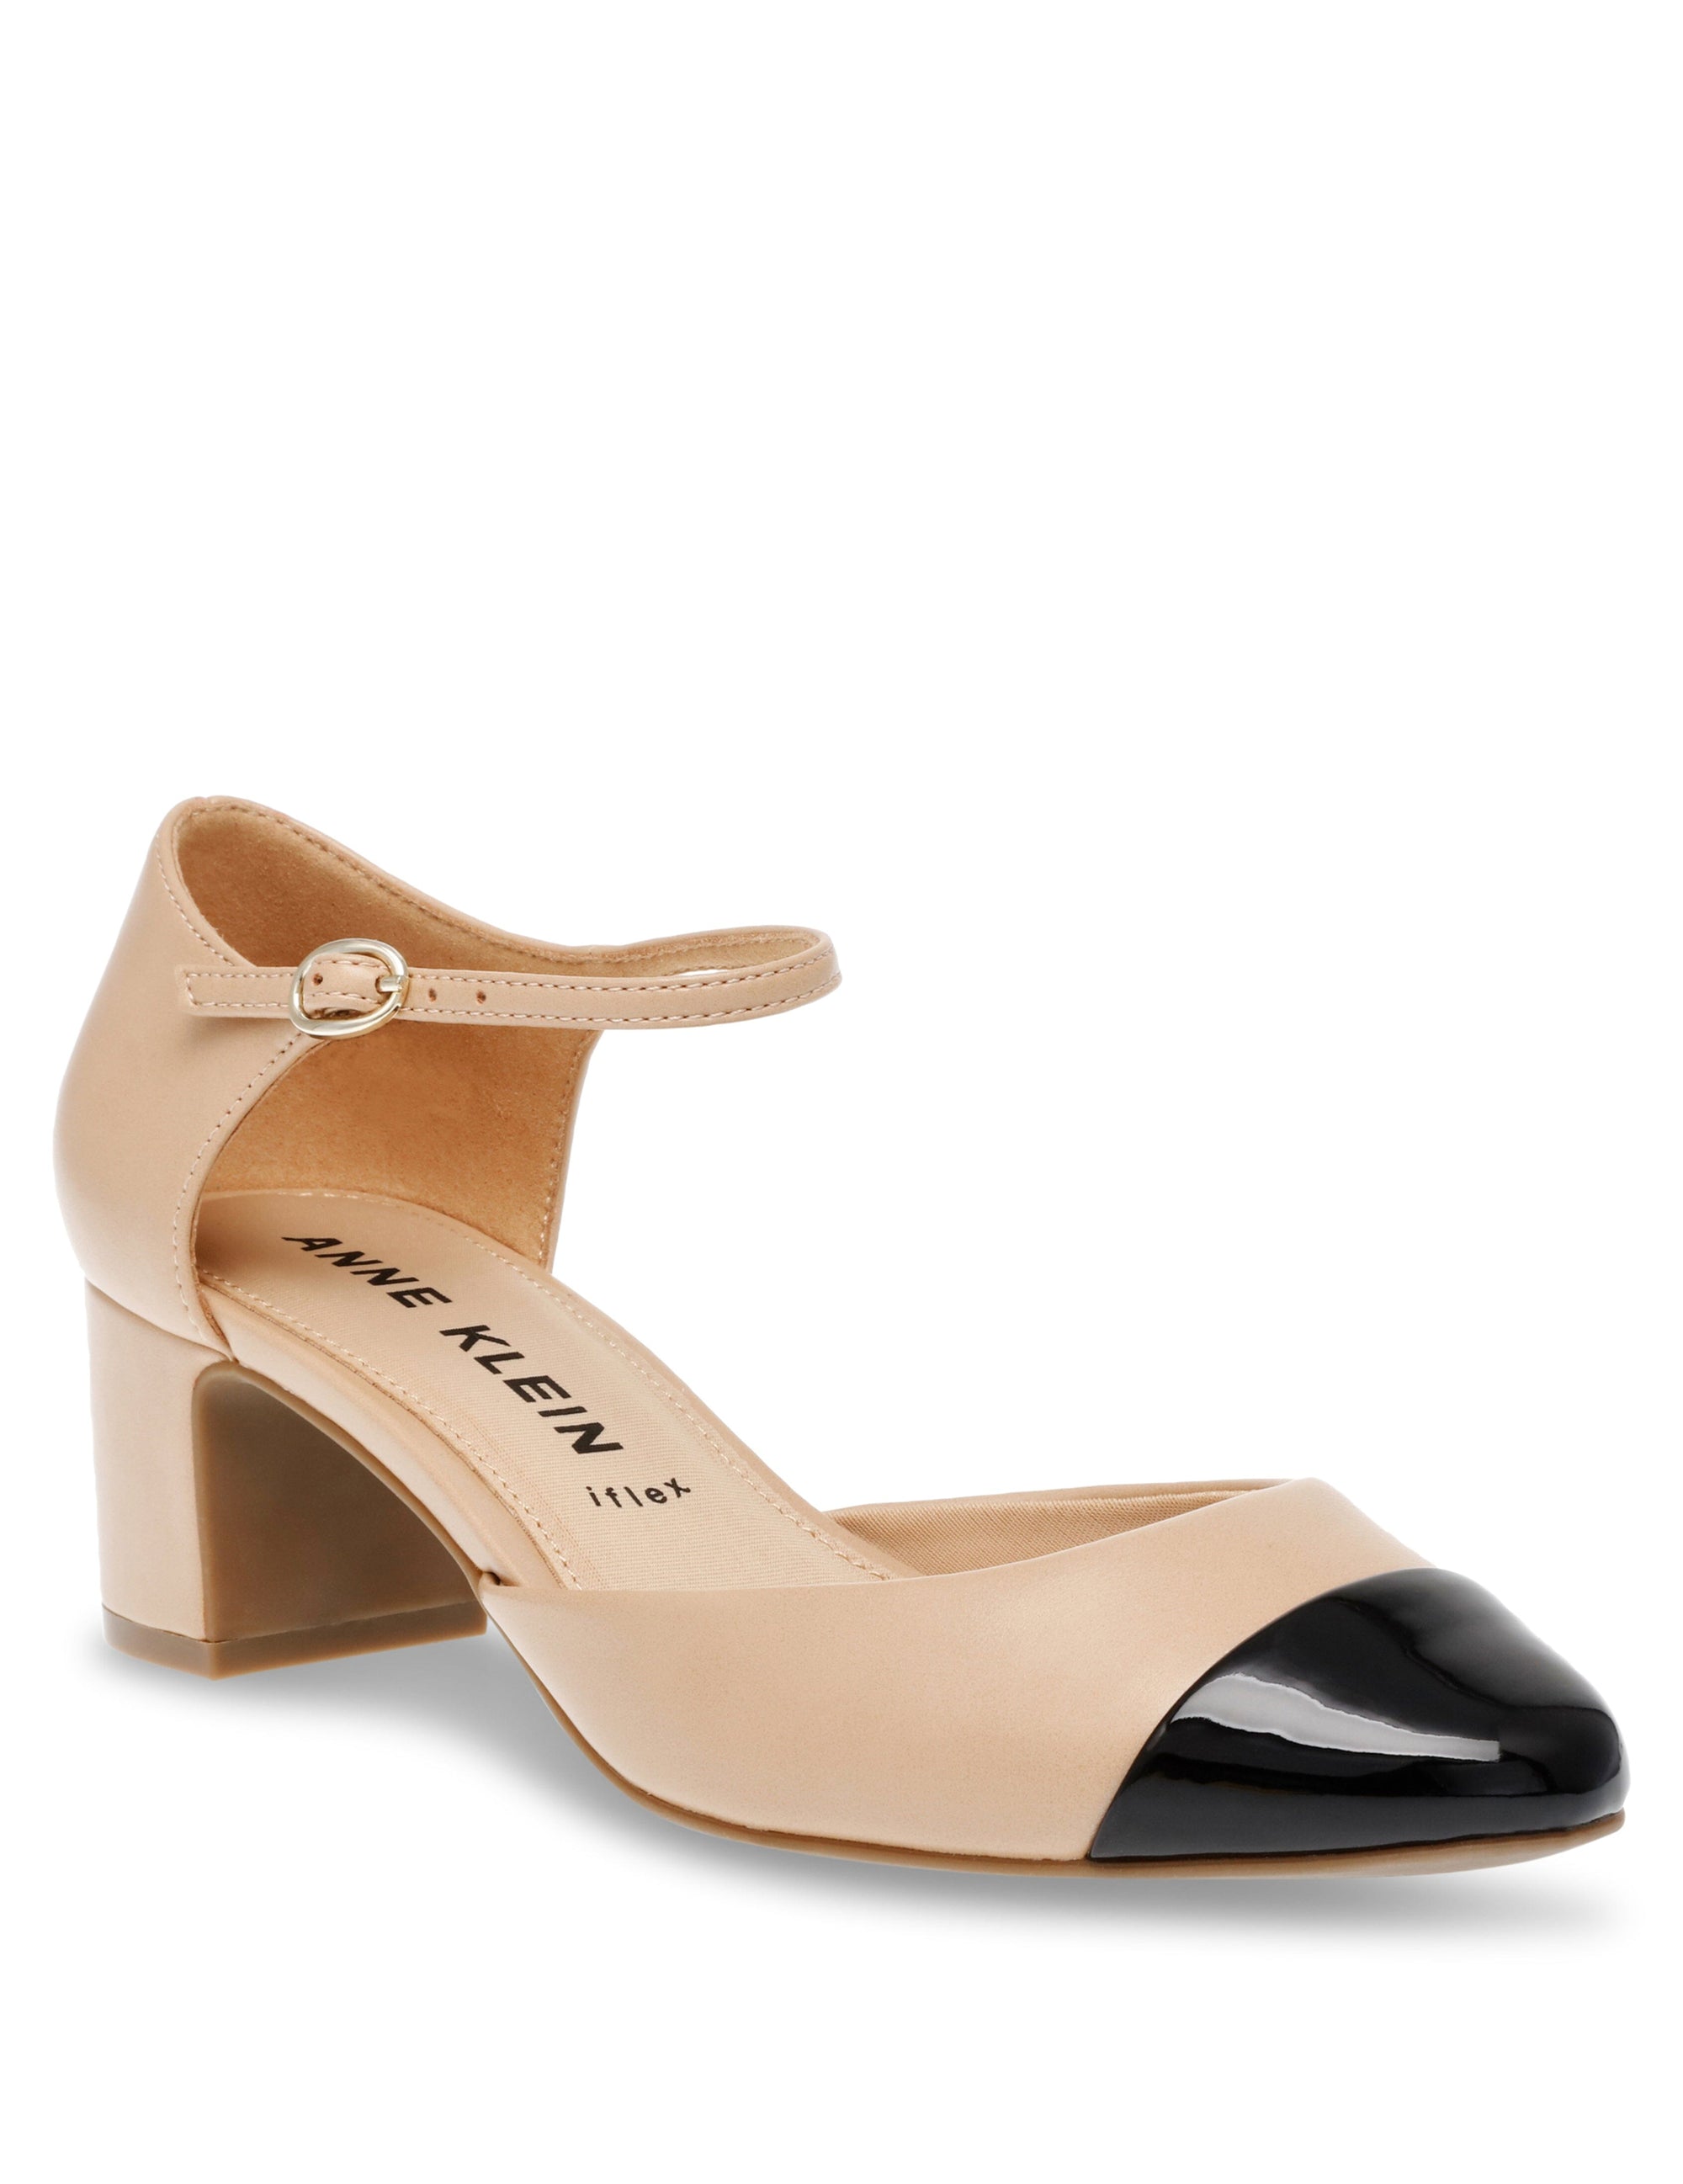 Shop Black Heel Sandals For Women online | Lazada.com.my